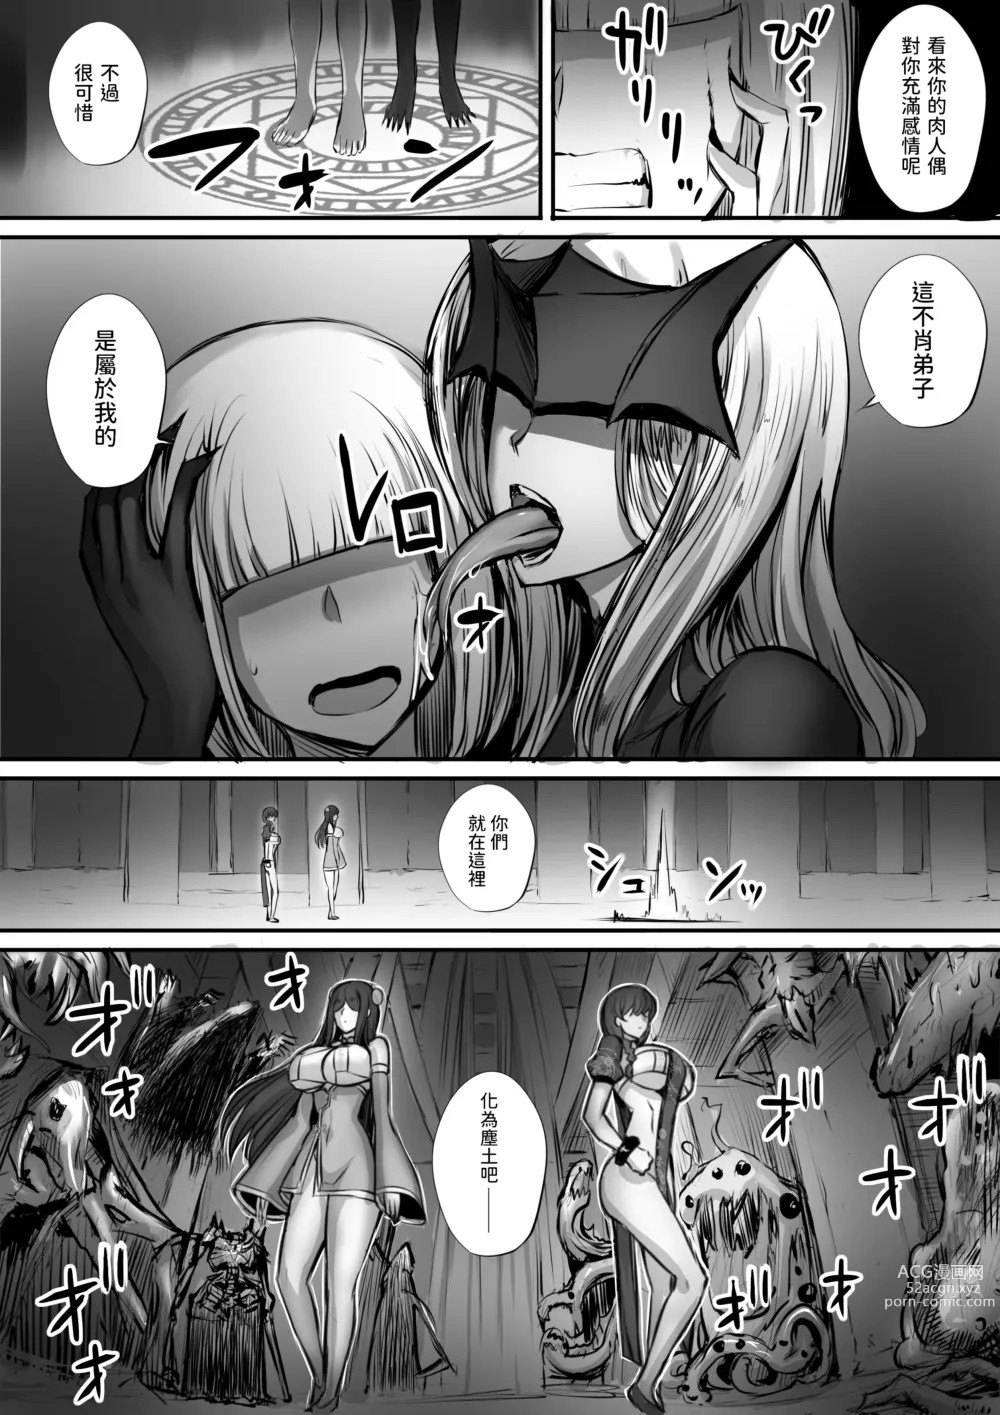 Page 8 of doujinshi 迷宮で格闘娘の死体を拾ってキョンシーにしてみた話3